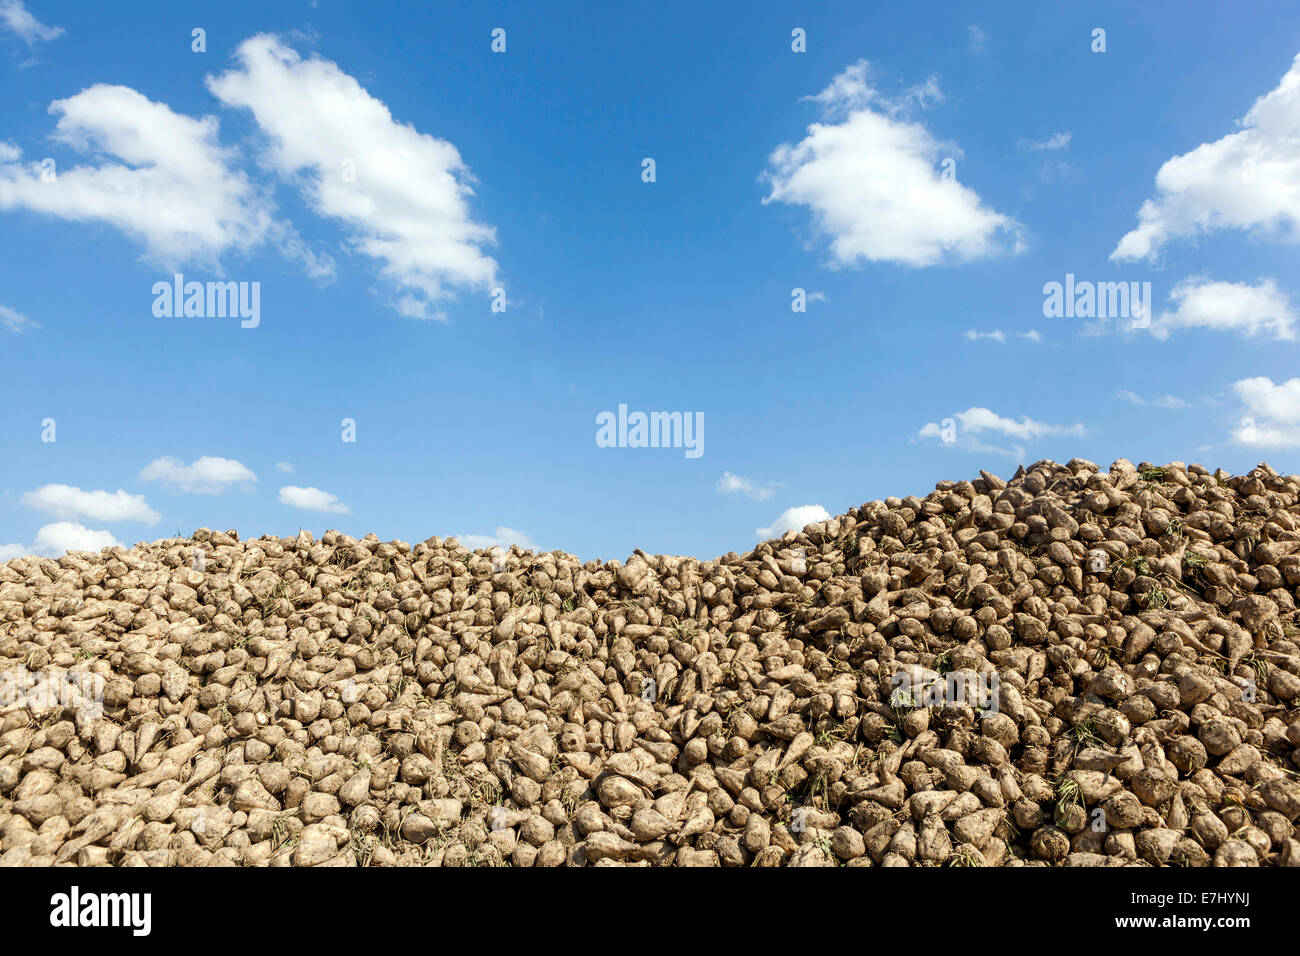 Pile, tas de betterave à sucre, pile de betteraves à sucre d'Europe Banque D'Images